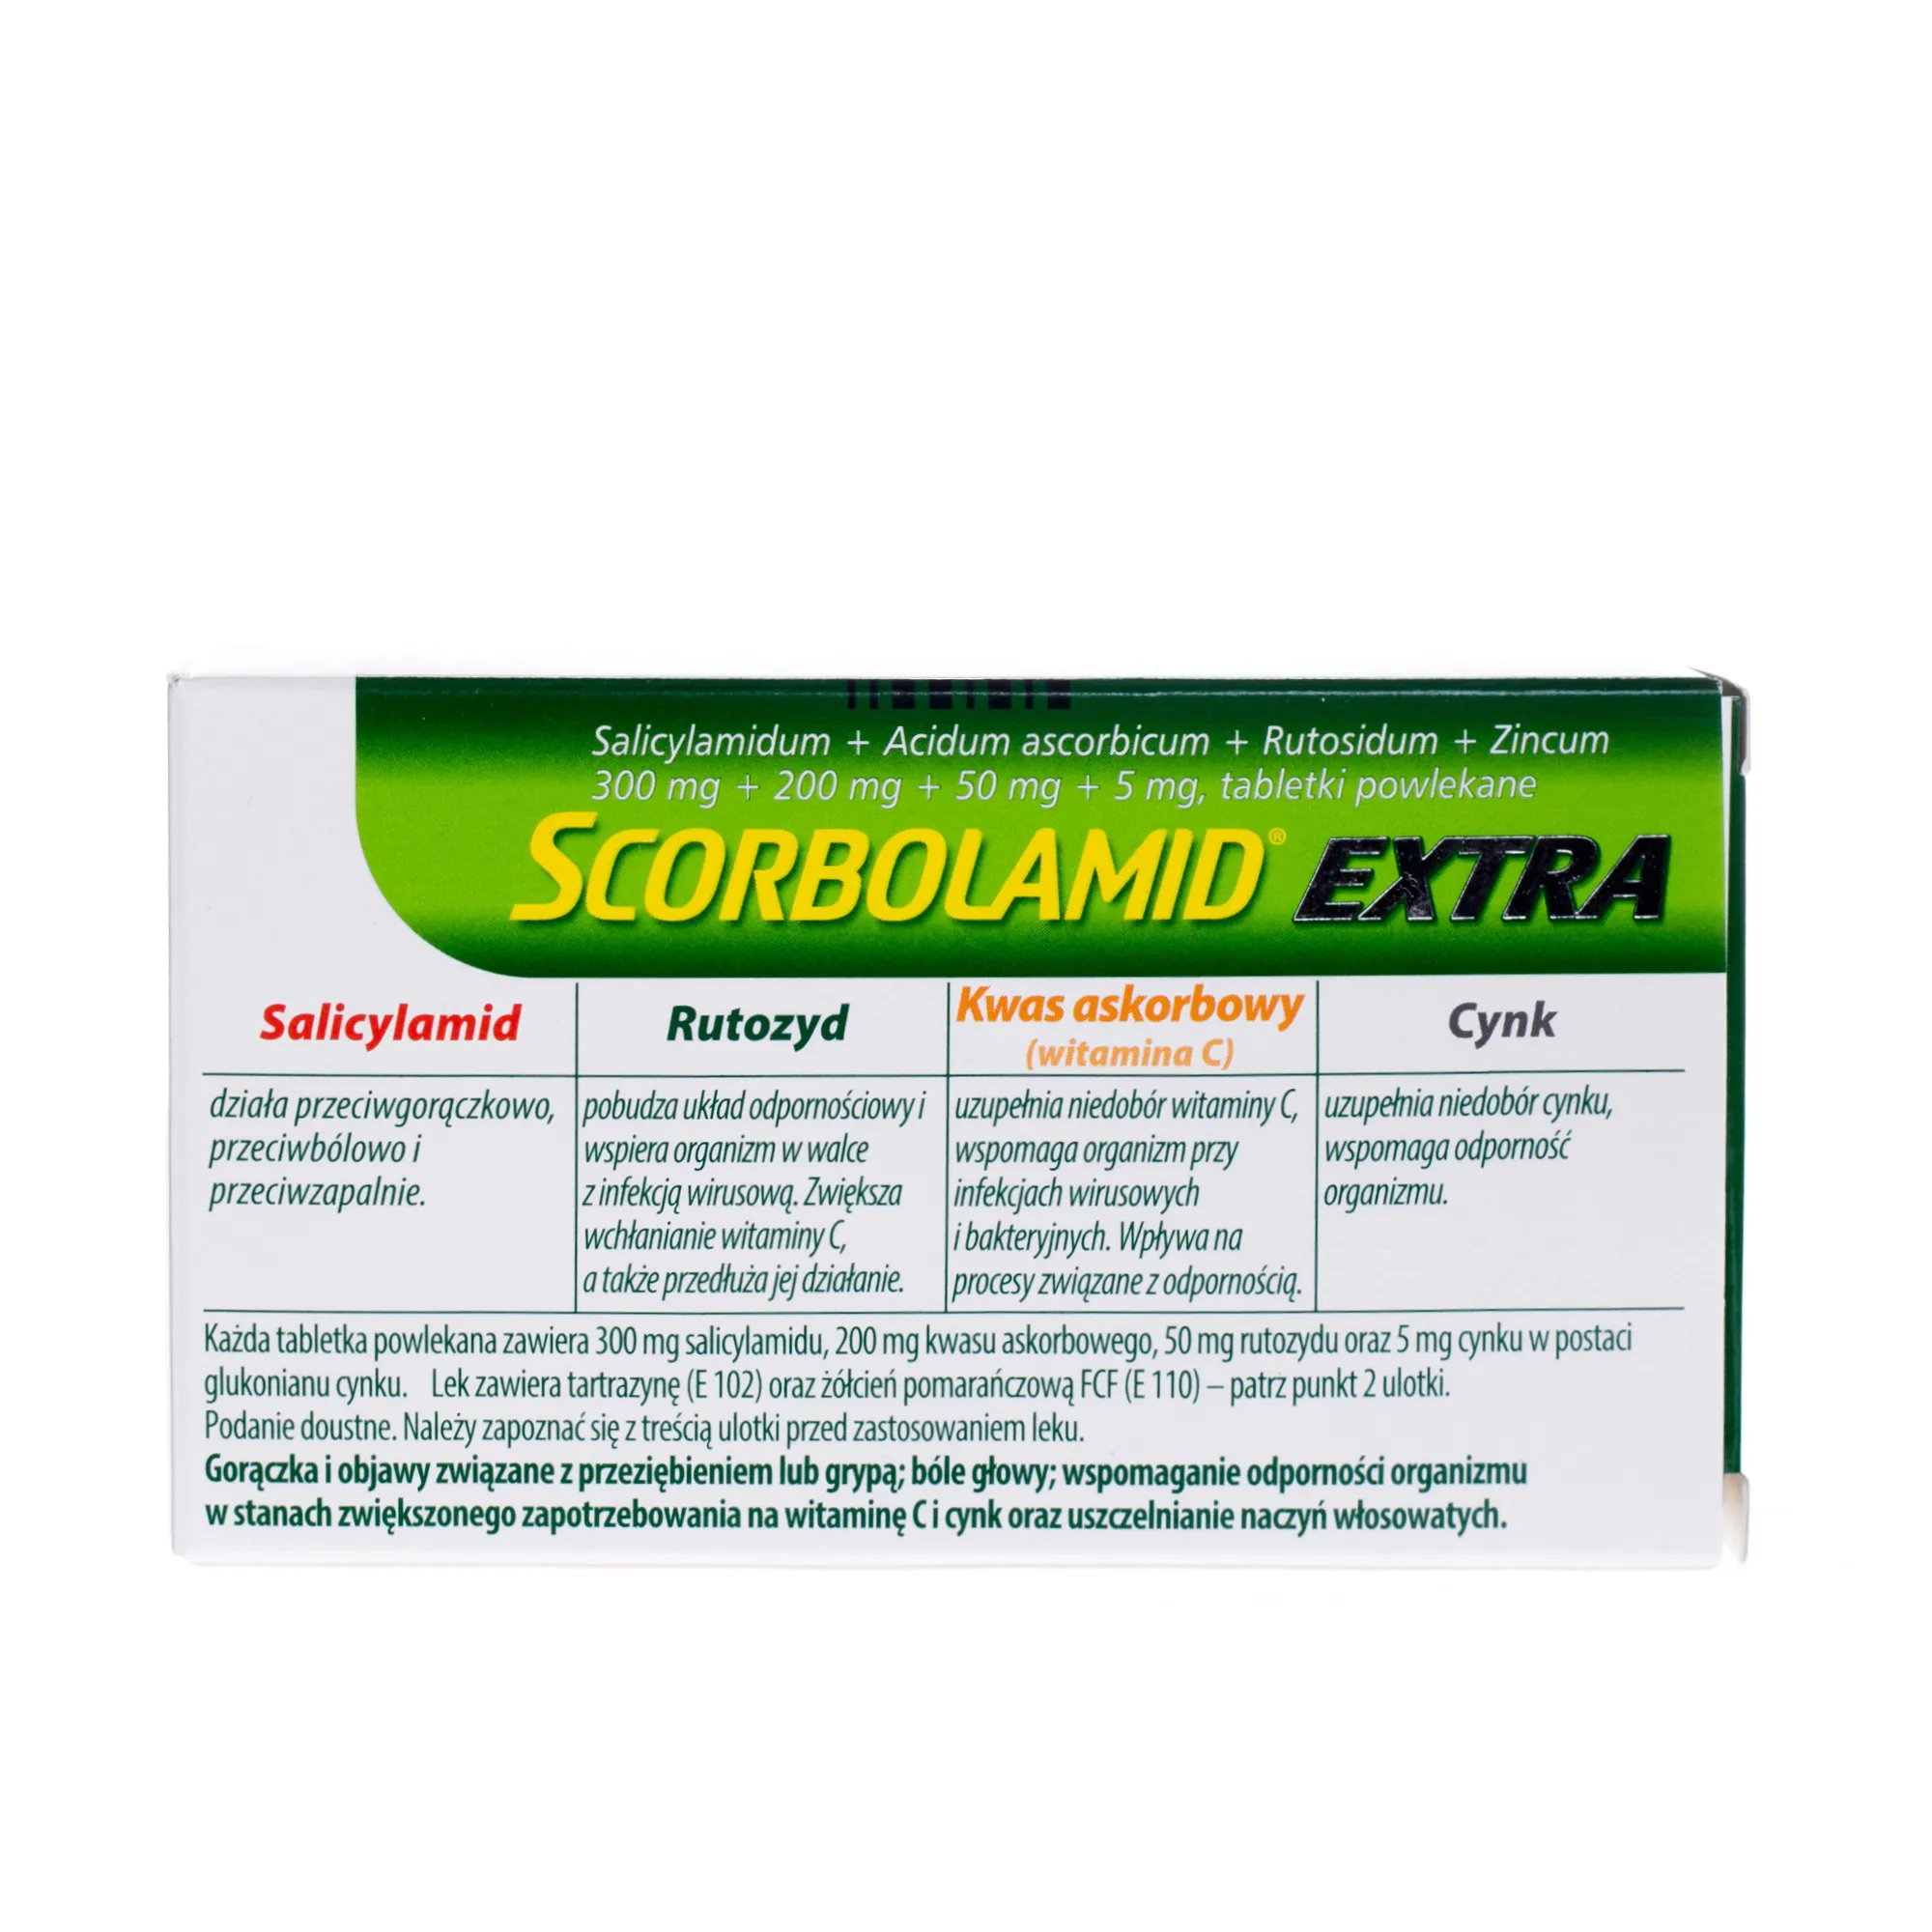 Scorbolamid Extra, 20 tabletek powlekanych 